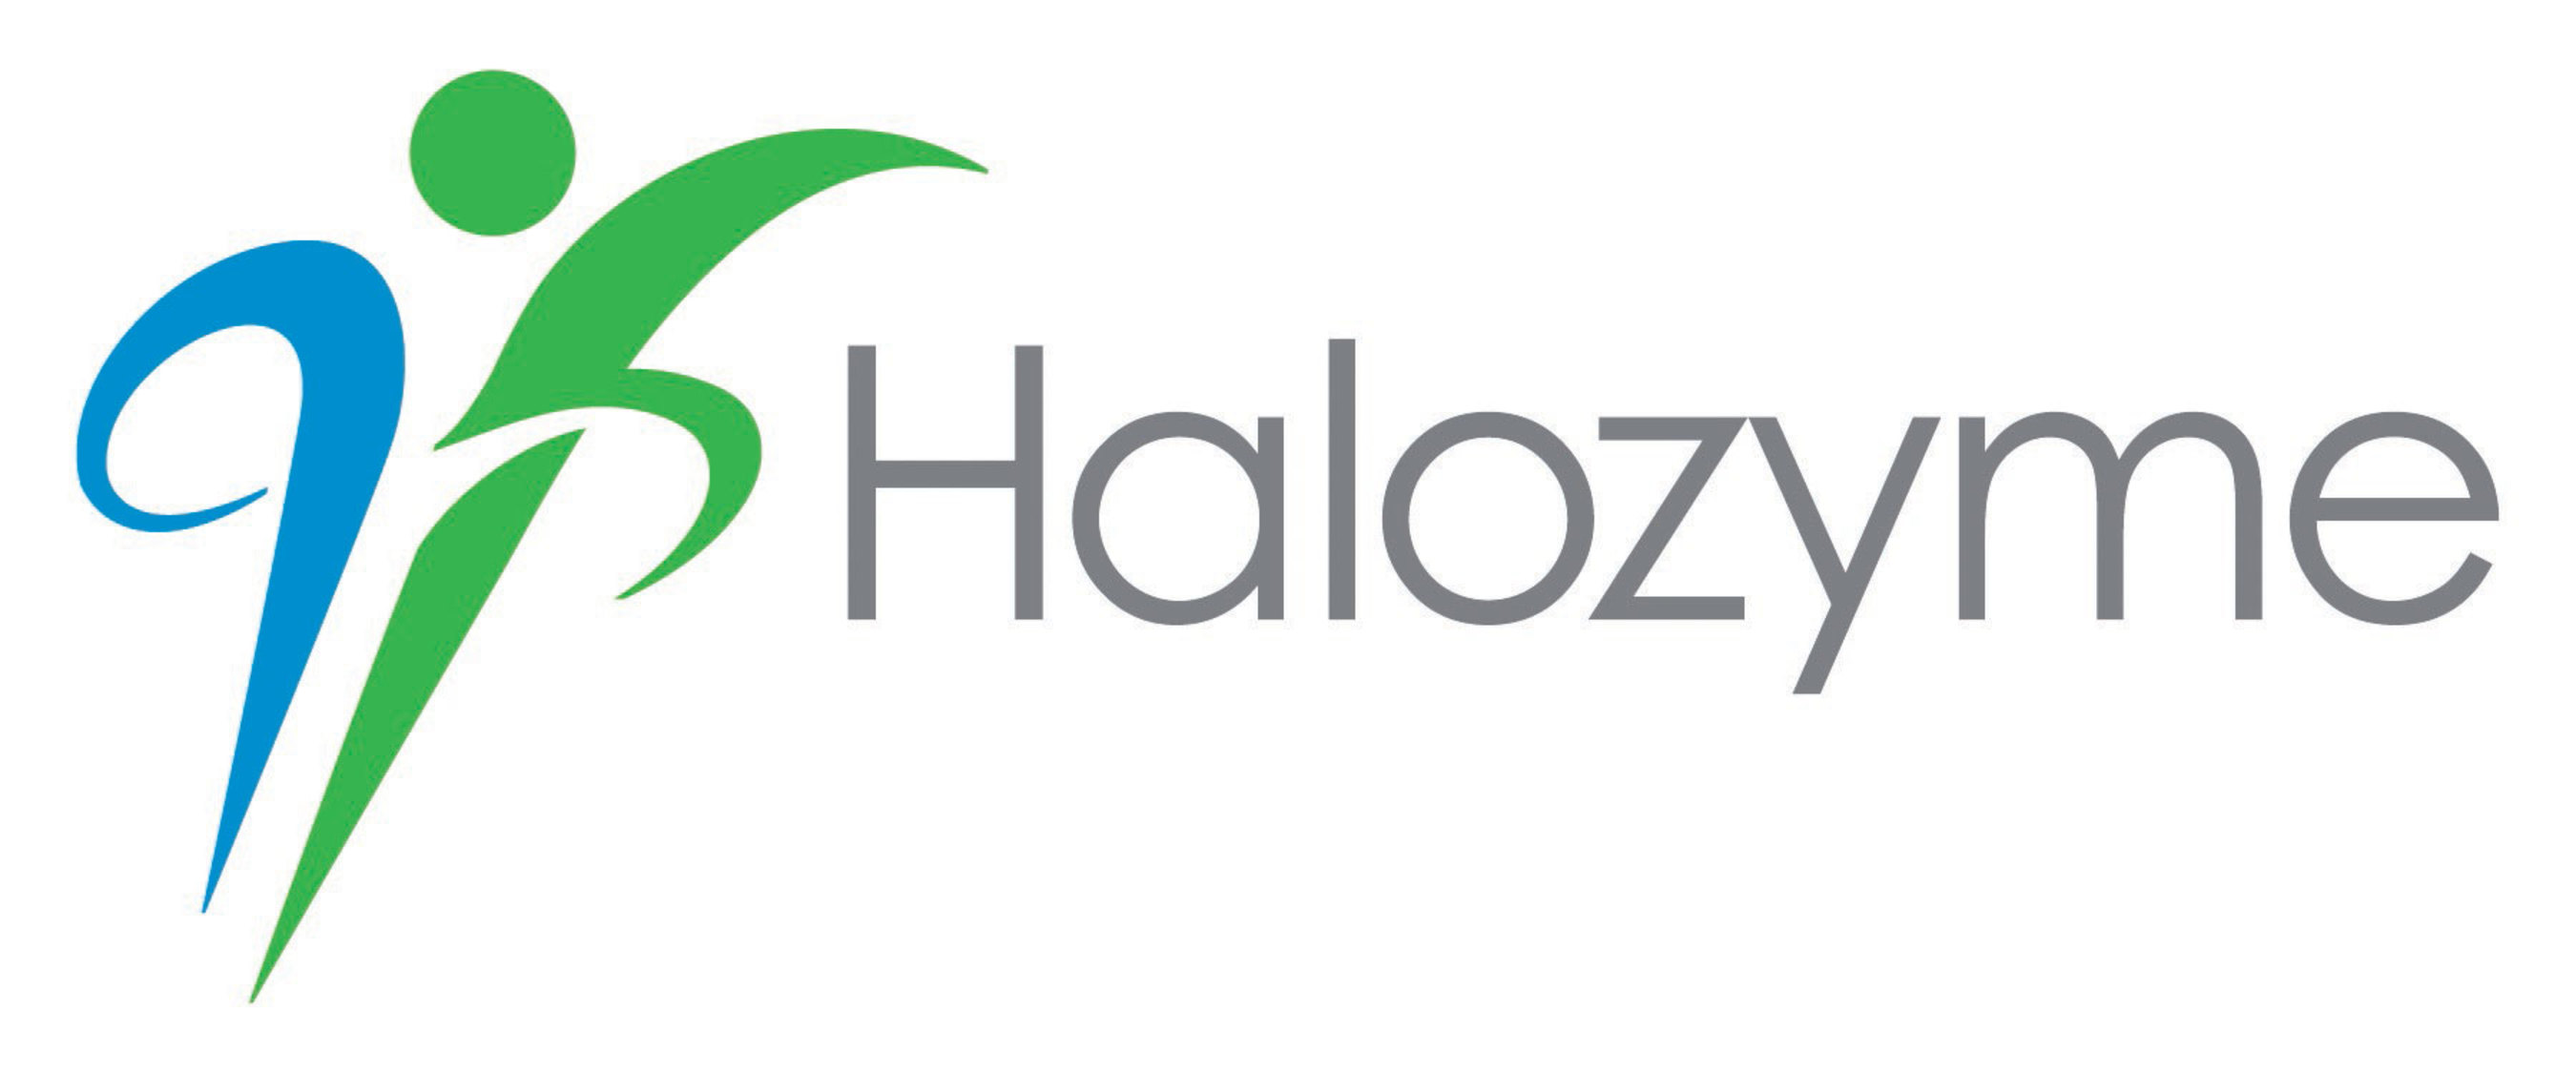 Halozyme Therapeutics, Inc. Logo. (PRNewsFoto/Halozyme Therapeutics, Inc.) (PRNewsFoto/)